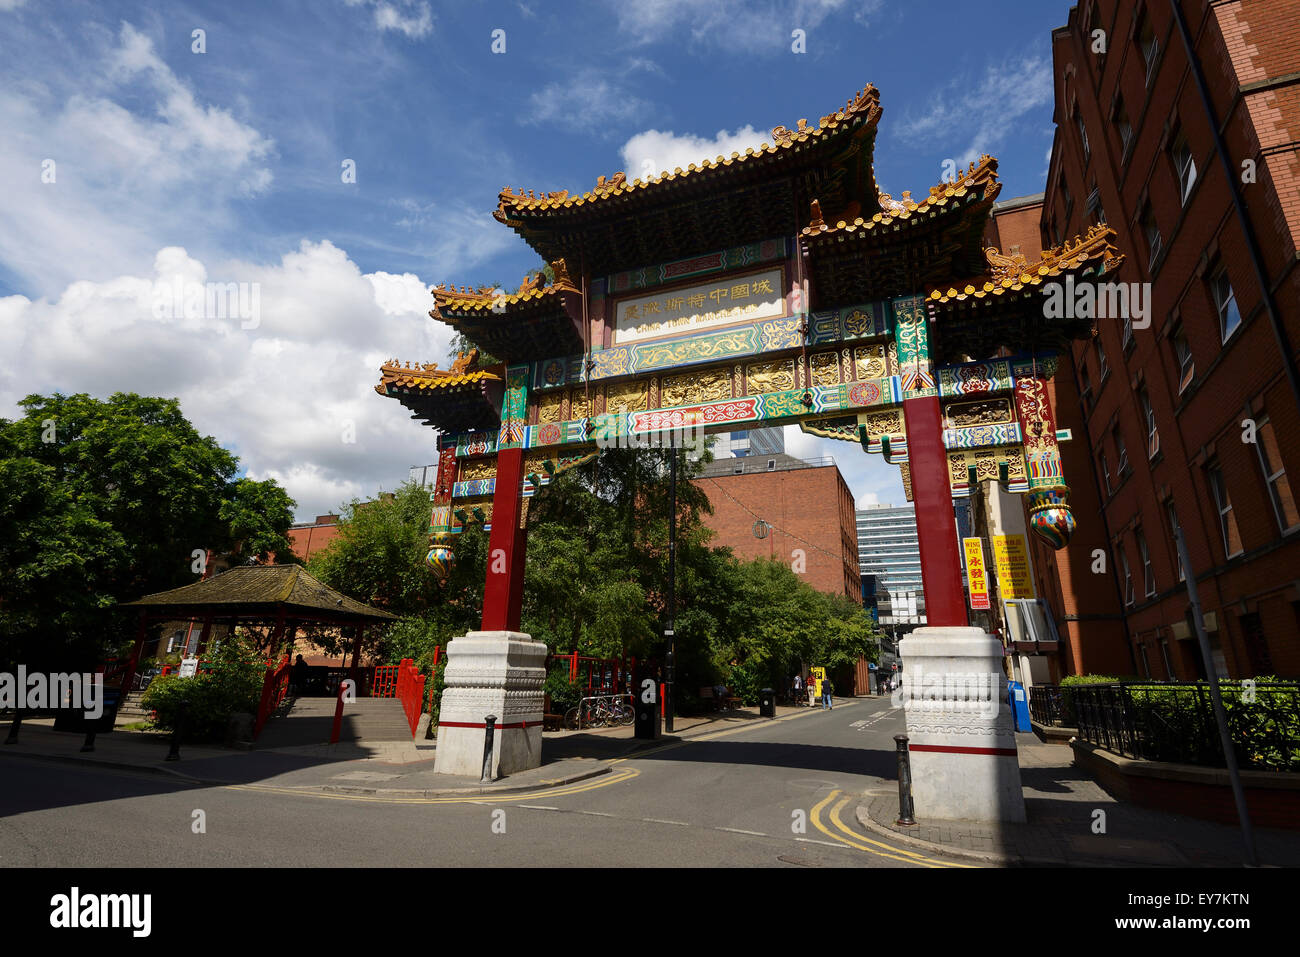 El arco chino en el distrito de Chinatown de Manchester City Centre UK Foto de stock